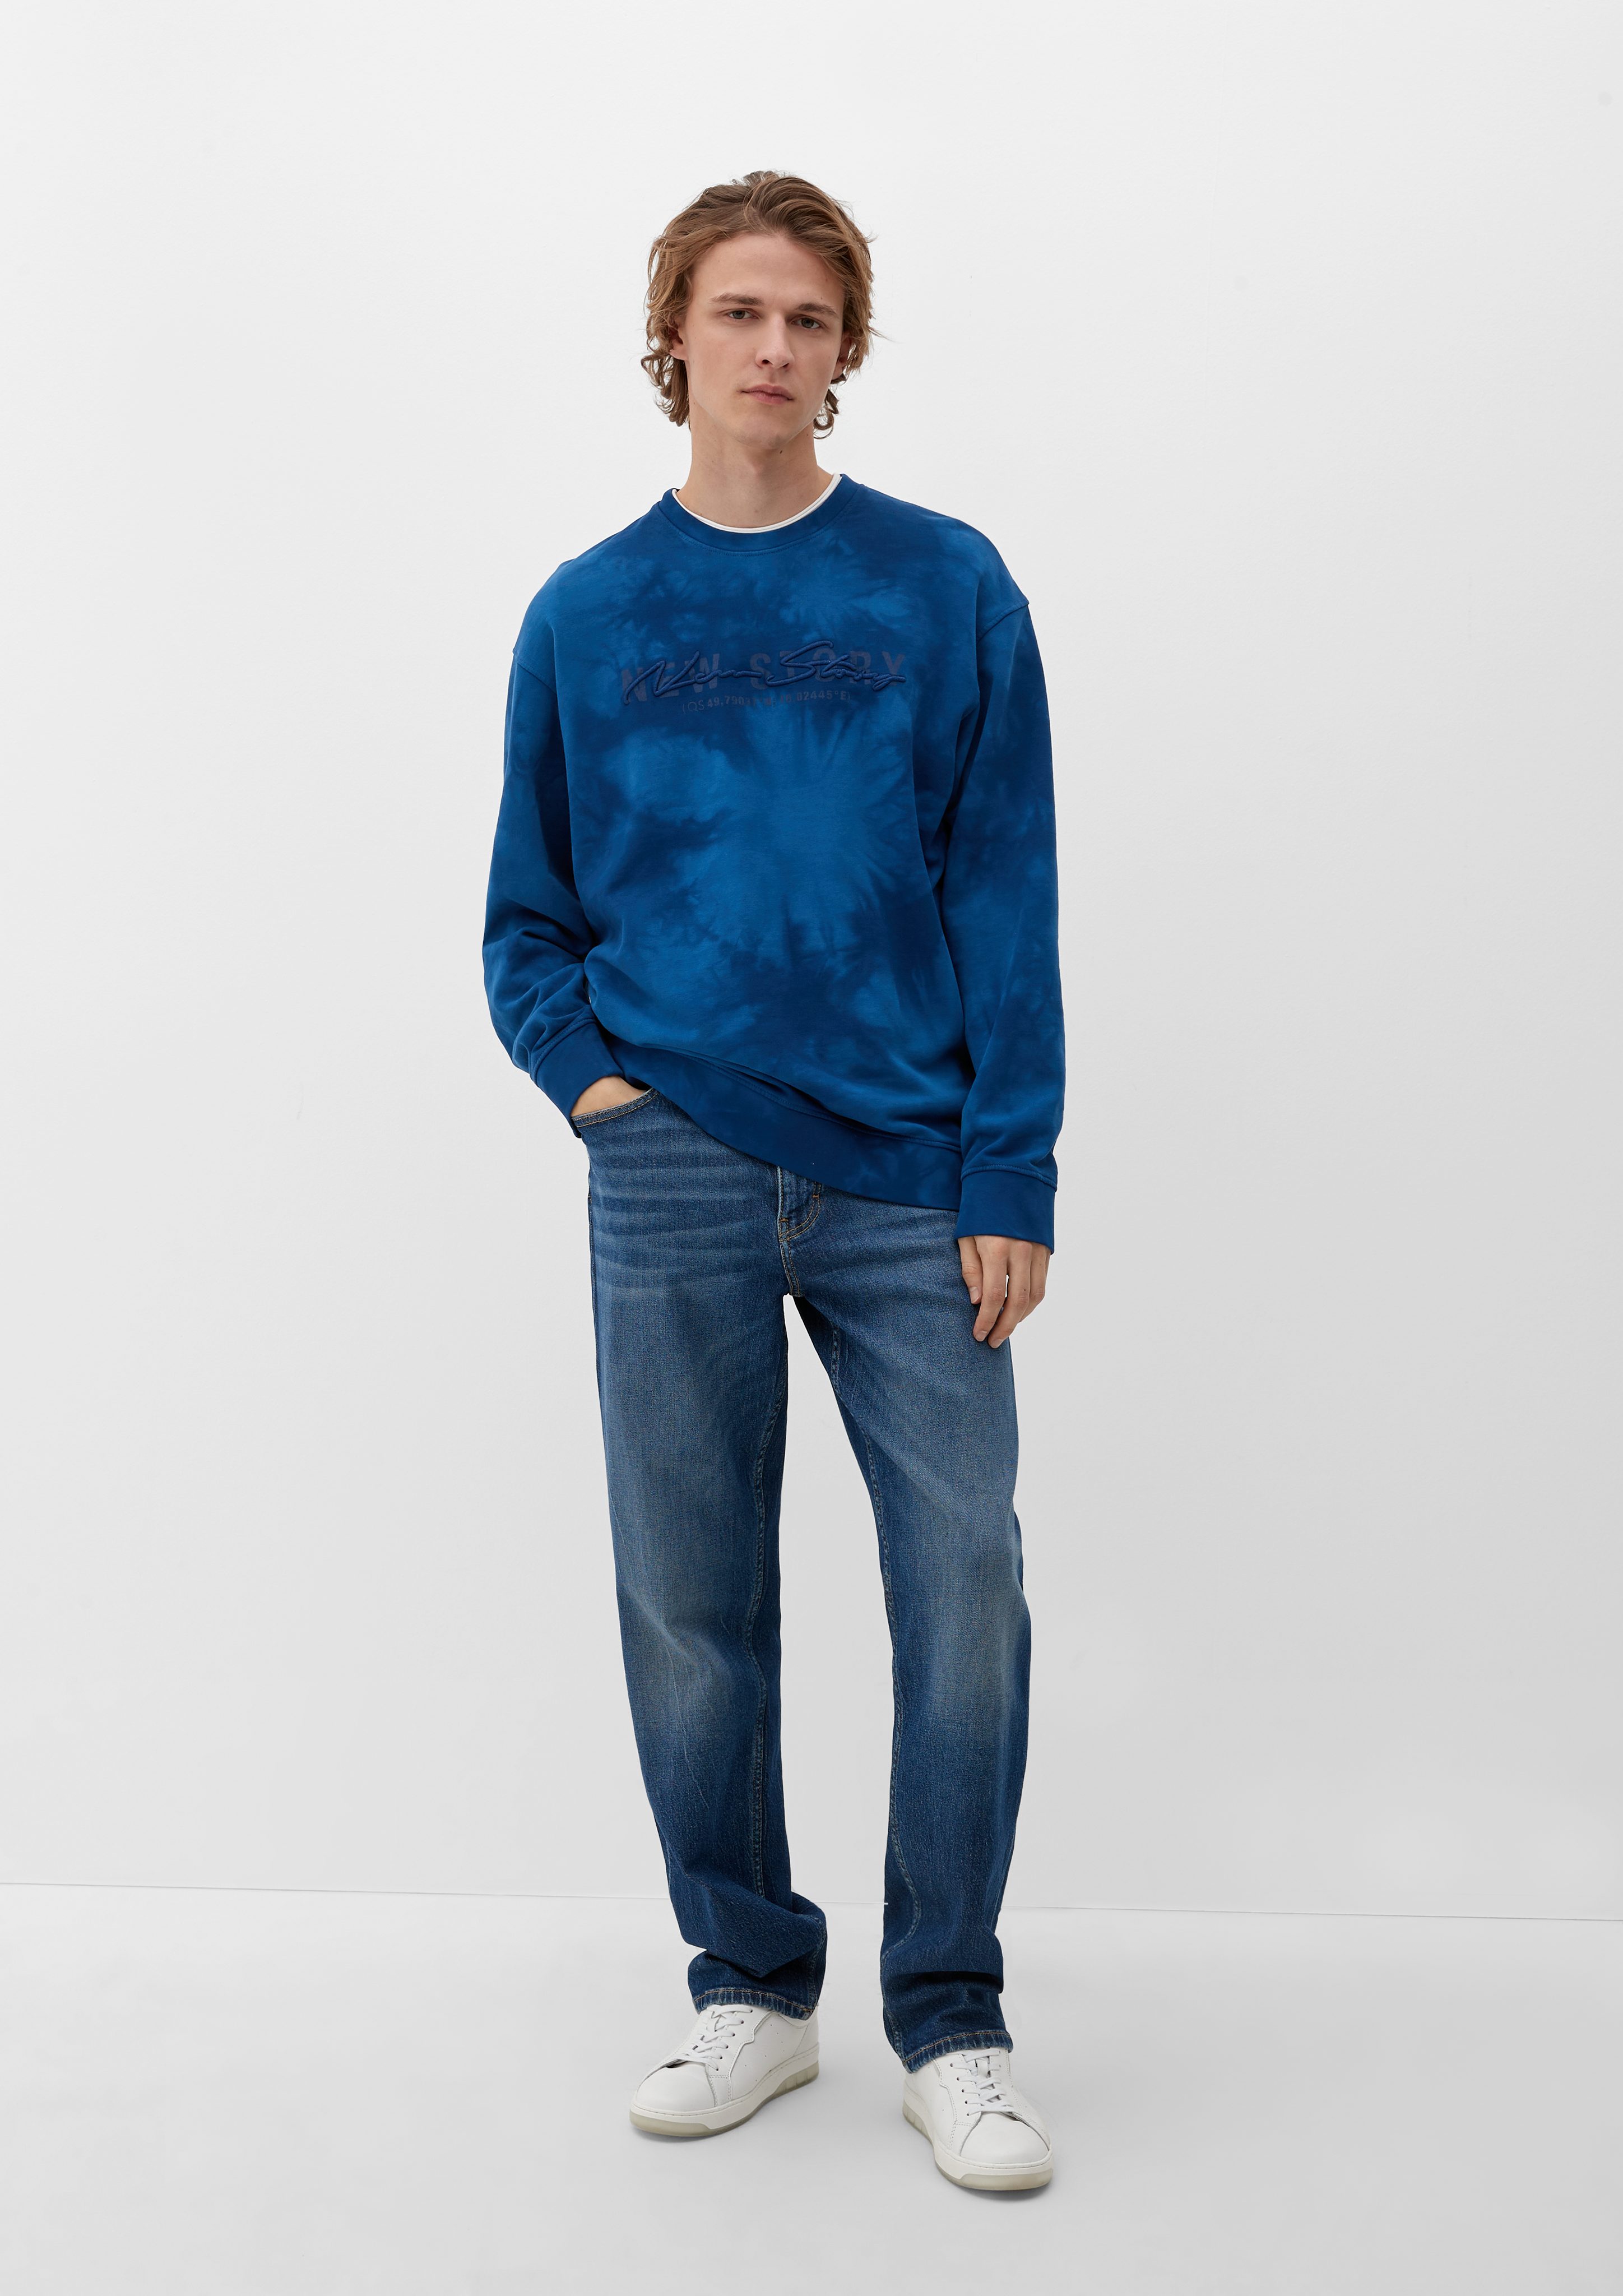 Batik-Optik QS Stickerei Sweatshirt ozeanblau in Sweatshirt